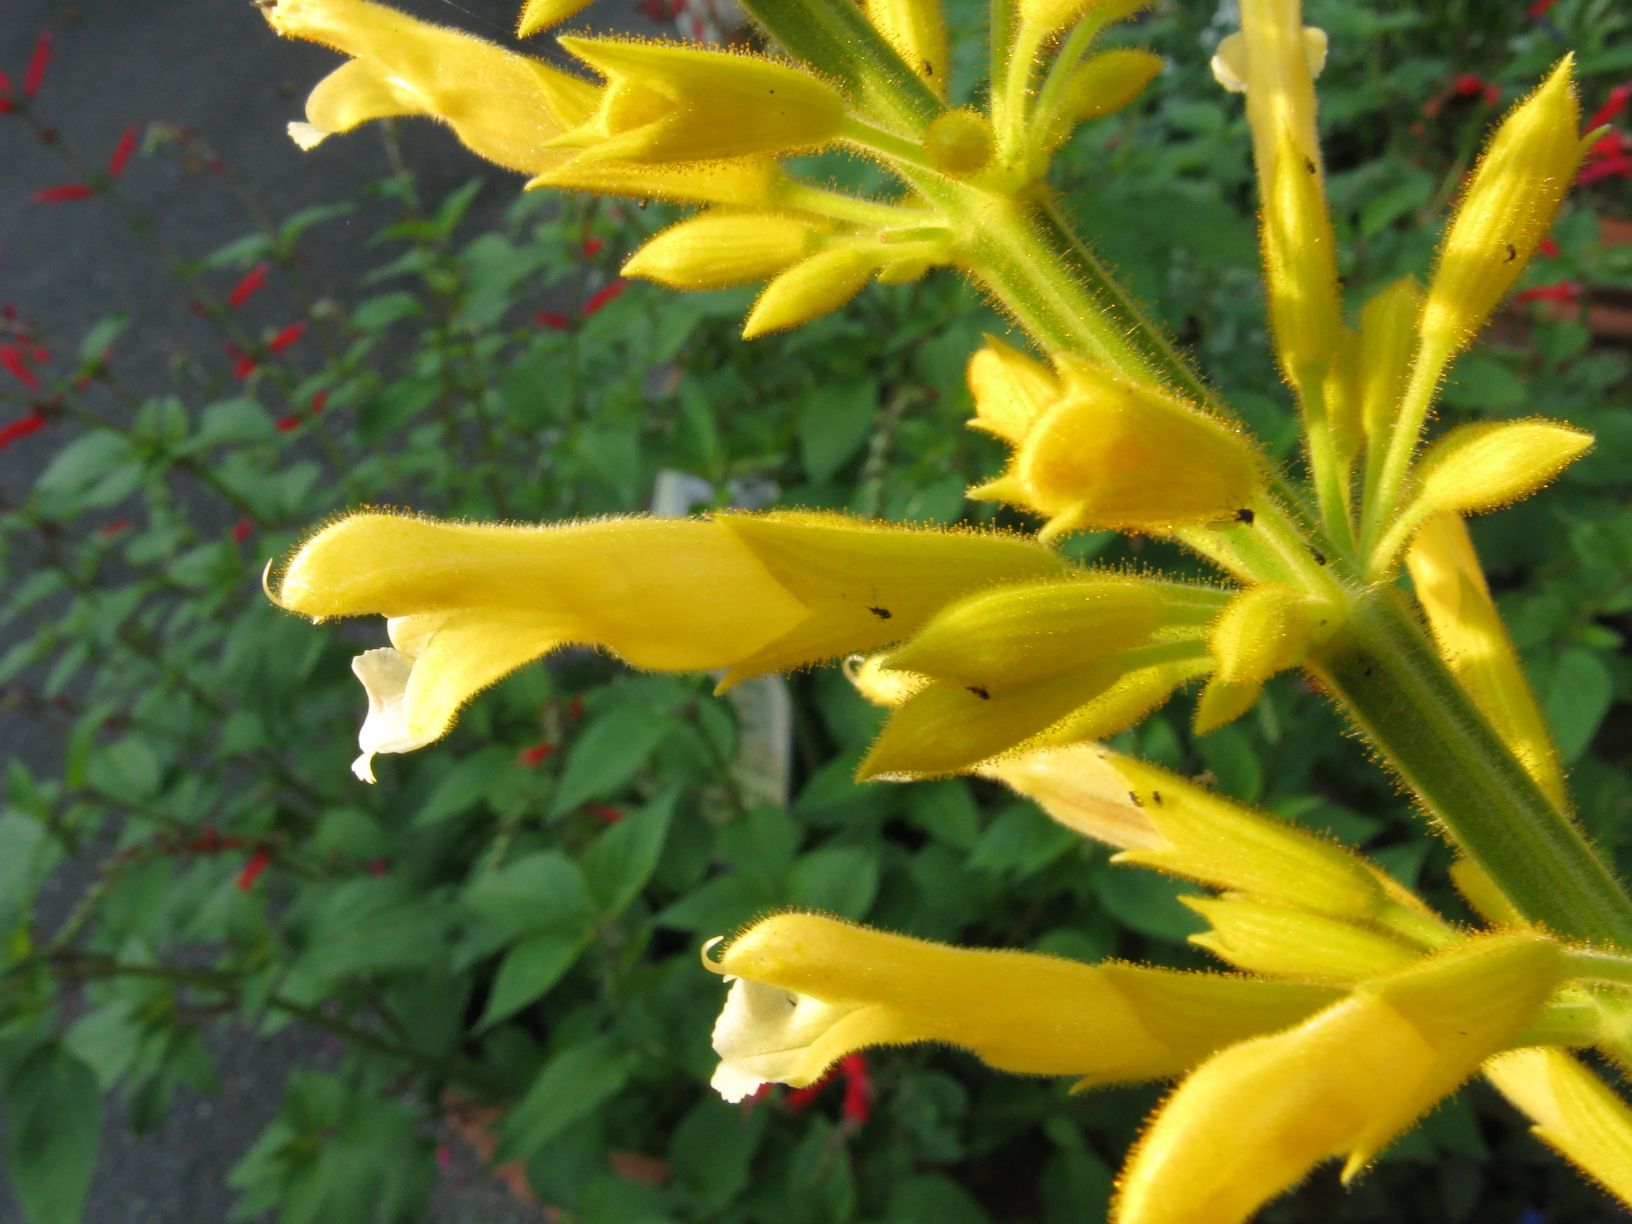 Yellow Salvias or Salvia Madrensis